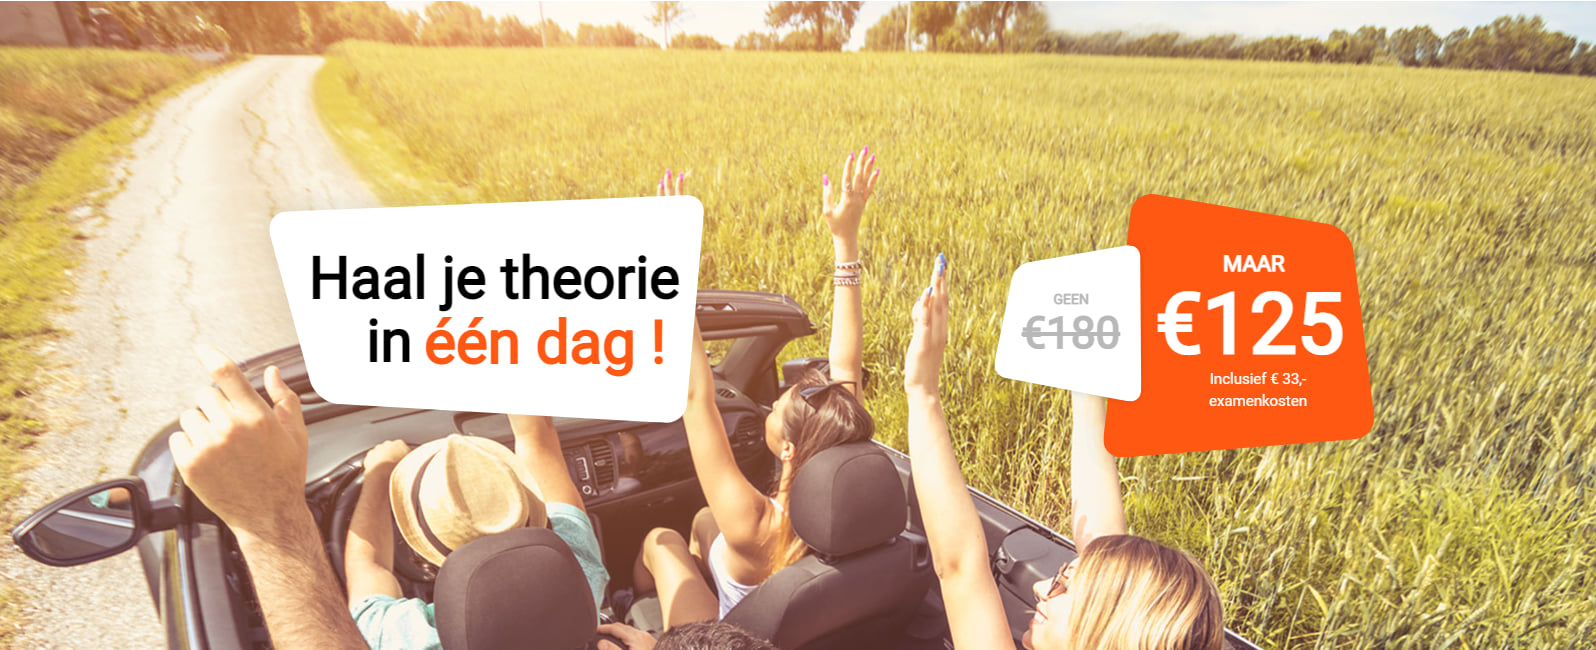 Haal je theorie in 1 dag bij TheoriePro.nl